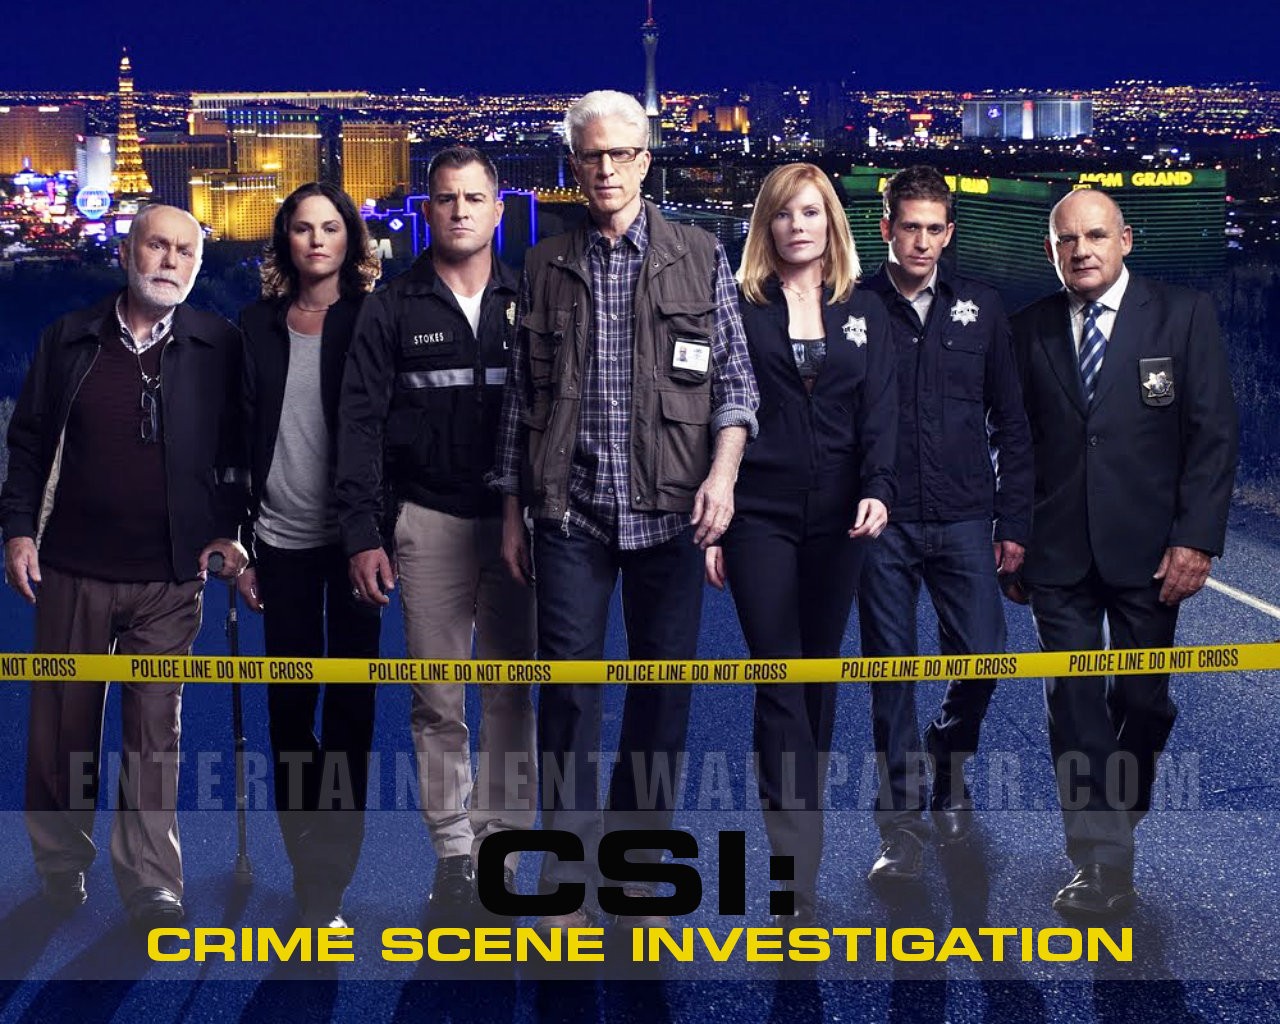 Csi Crime Scene Investigation Wallpaper Original Size Now